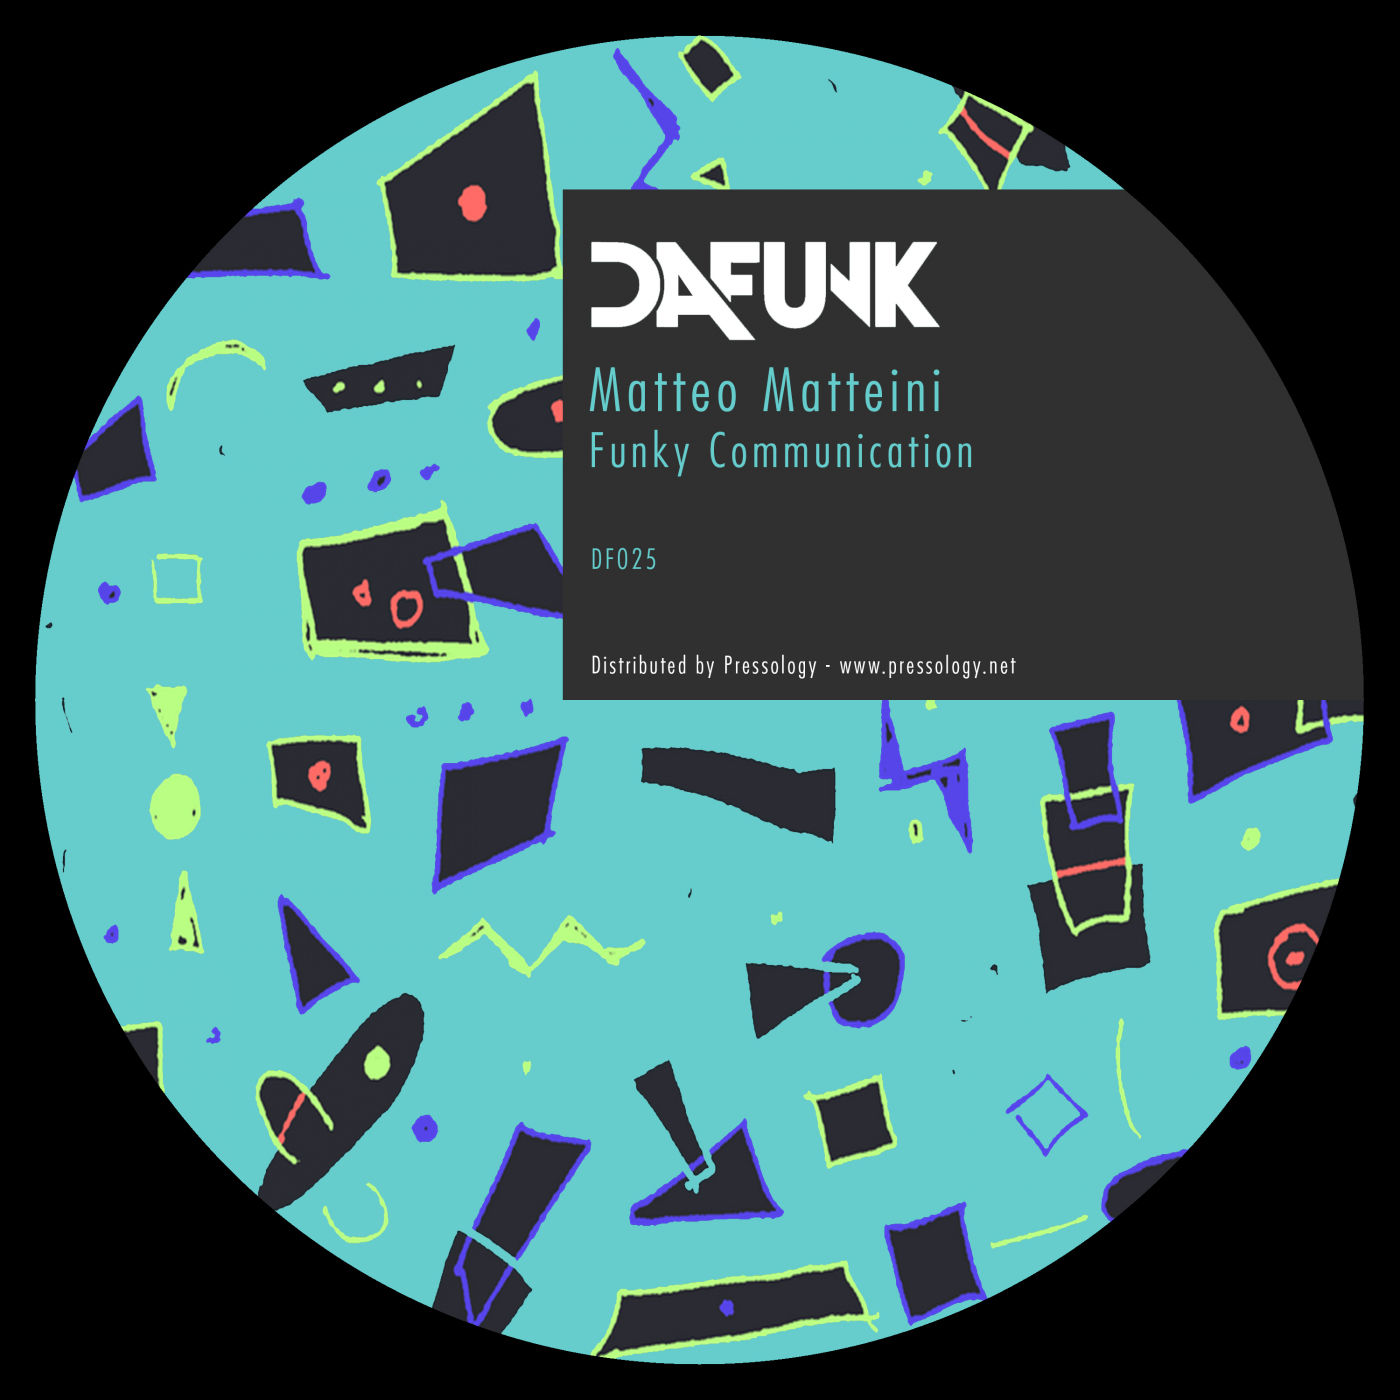 Matteo Matteini - Funky Communication / Dafunk